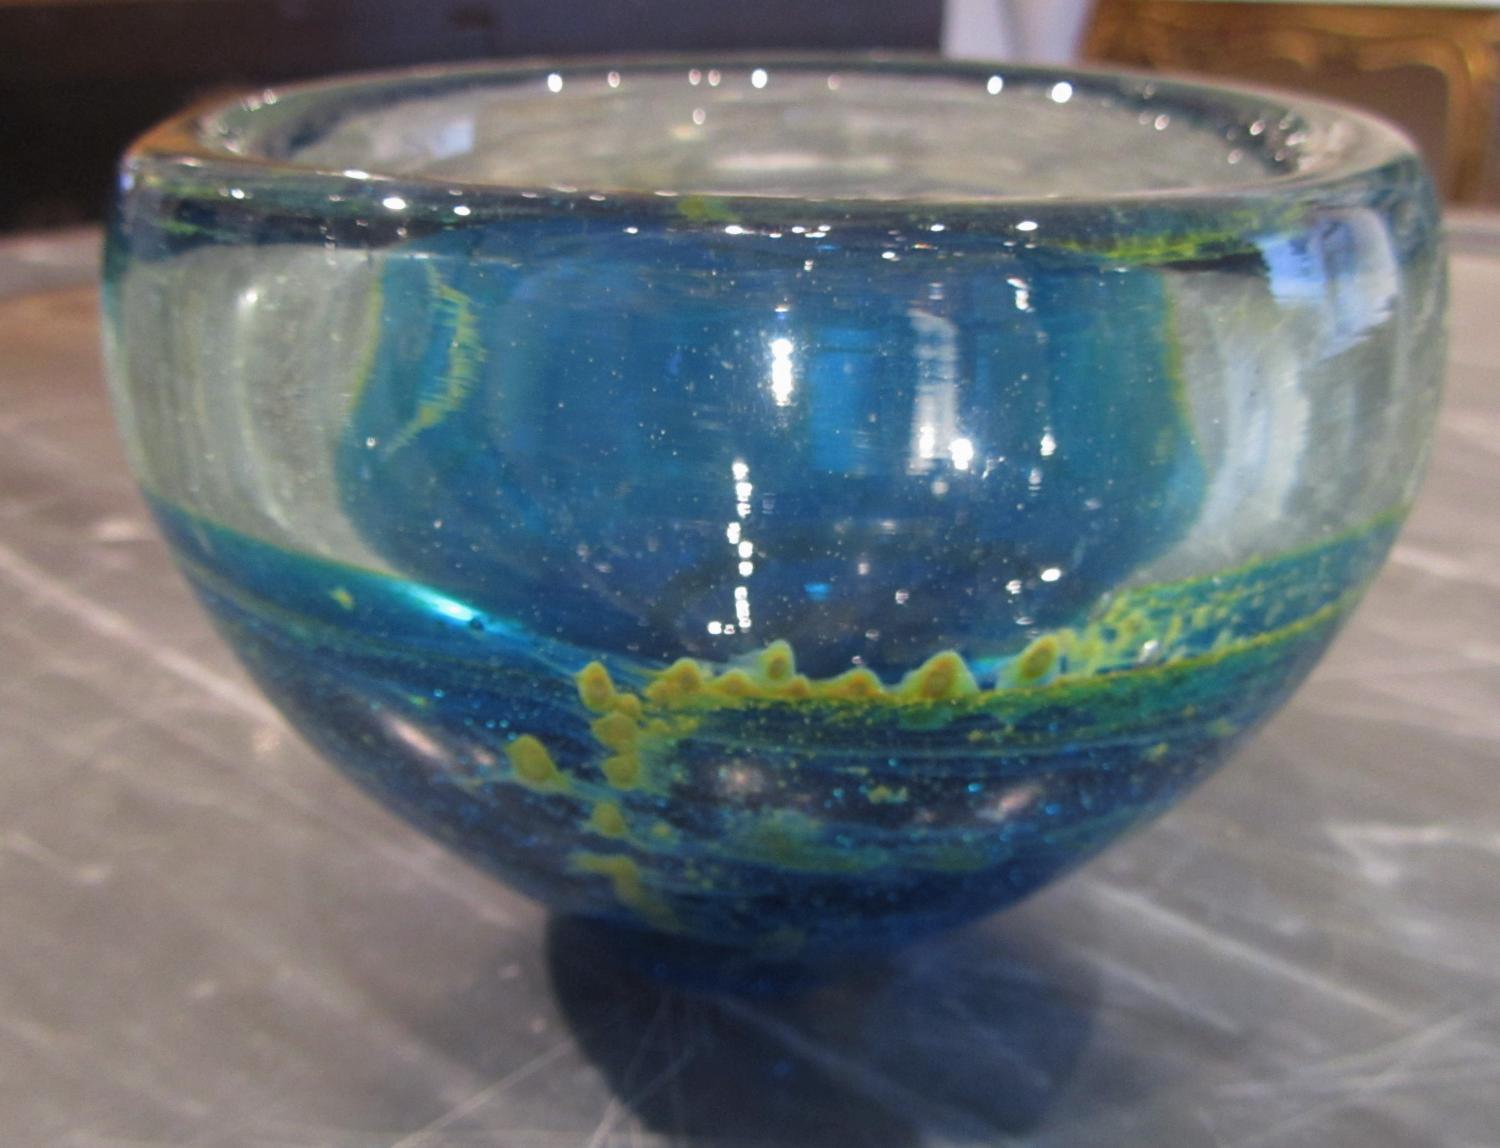 An Art glass bowl